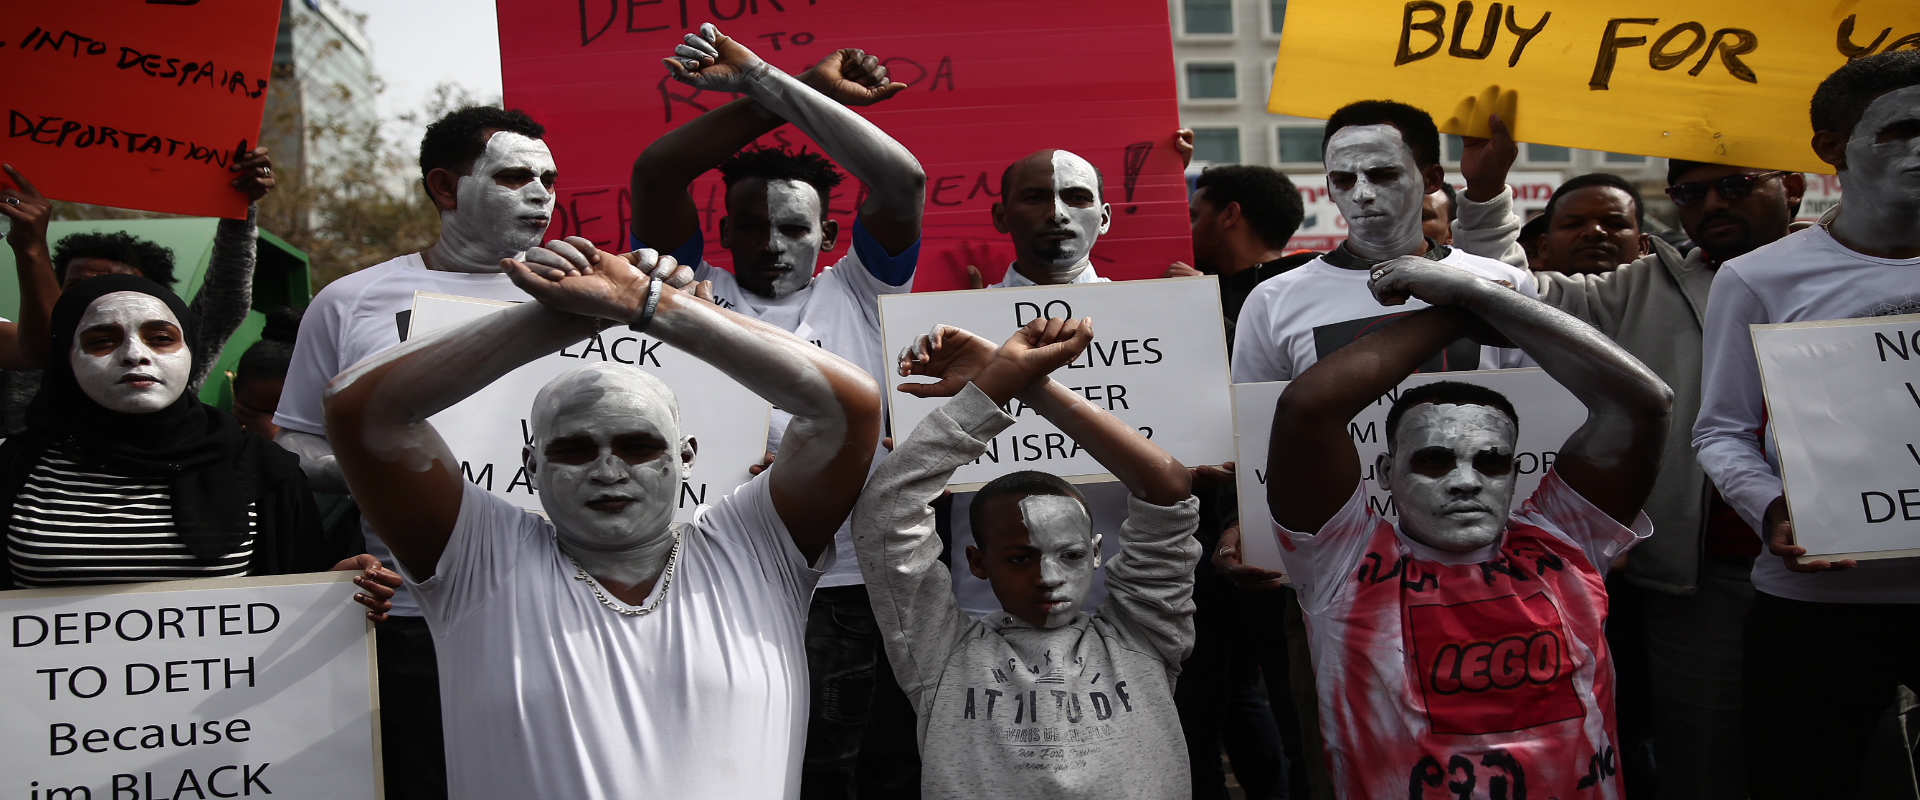 מבקשי מקלט מפגינים מול שגרירות רואנדה בהרצליה